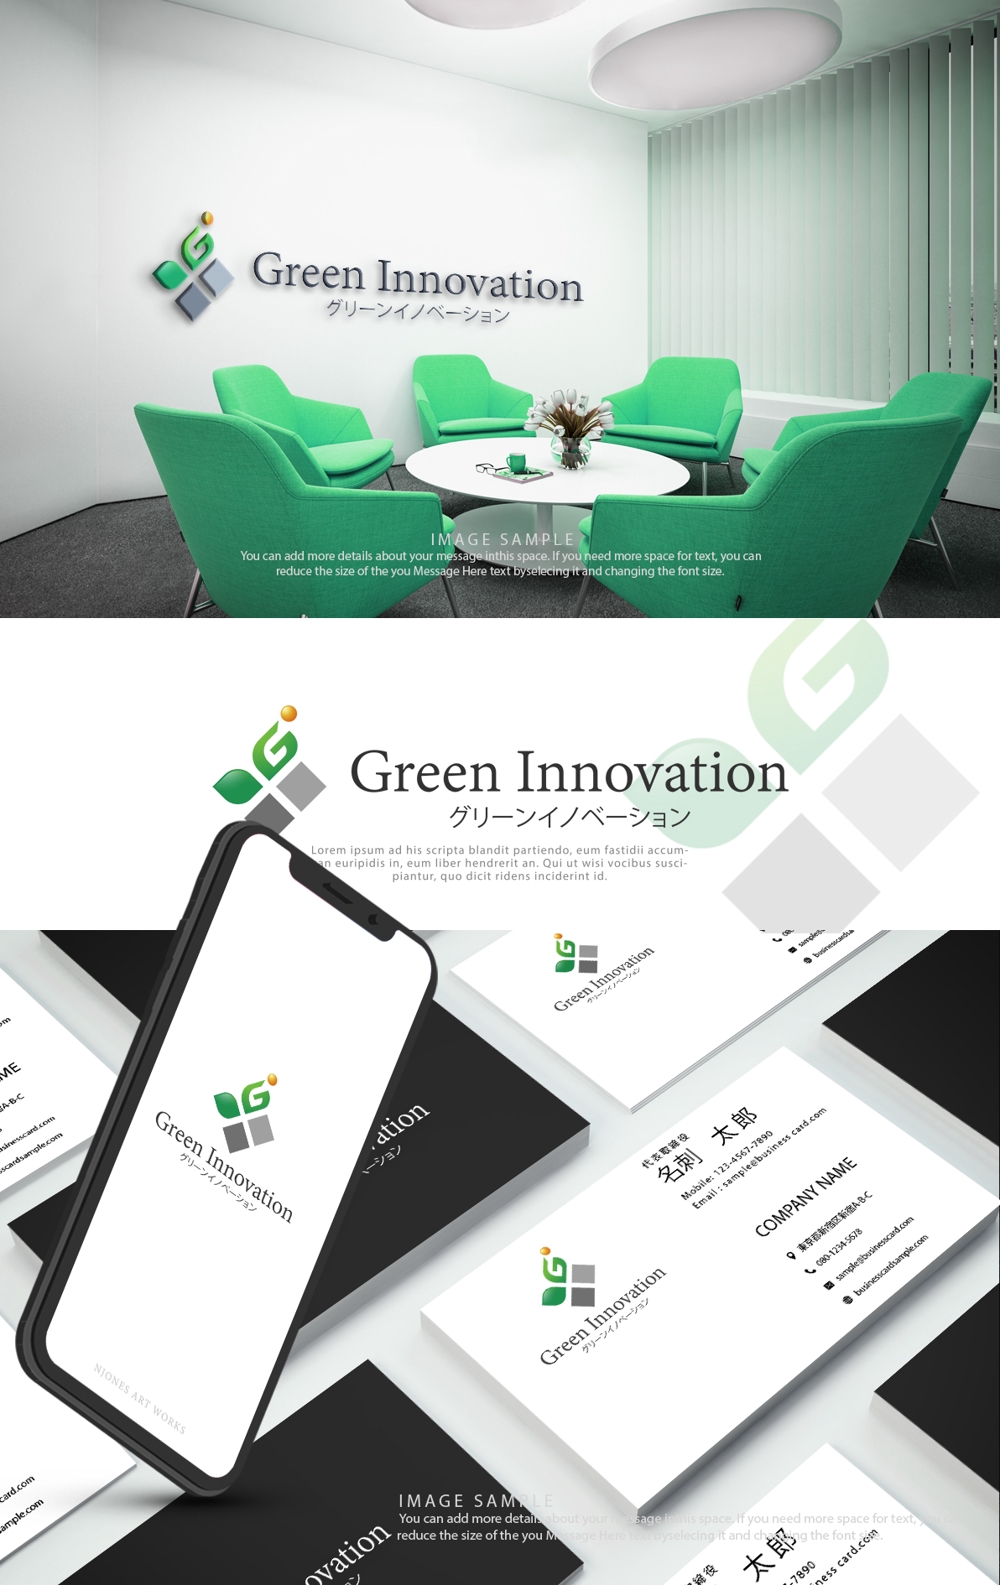 再生エネルギー売電事業と農業事業「グリーンイノベーション」のロゴ